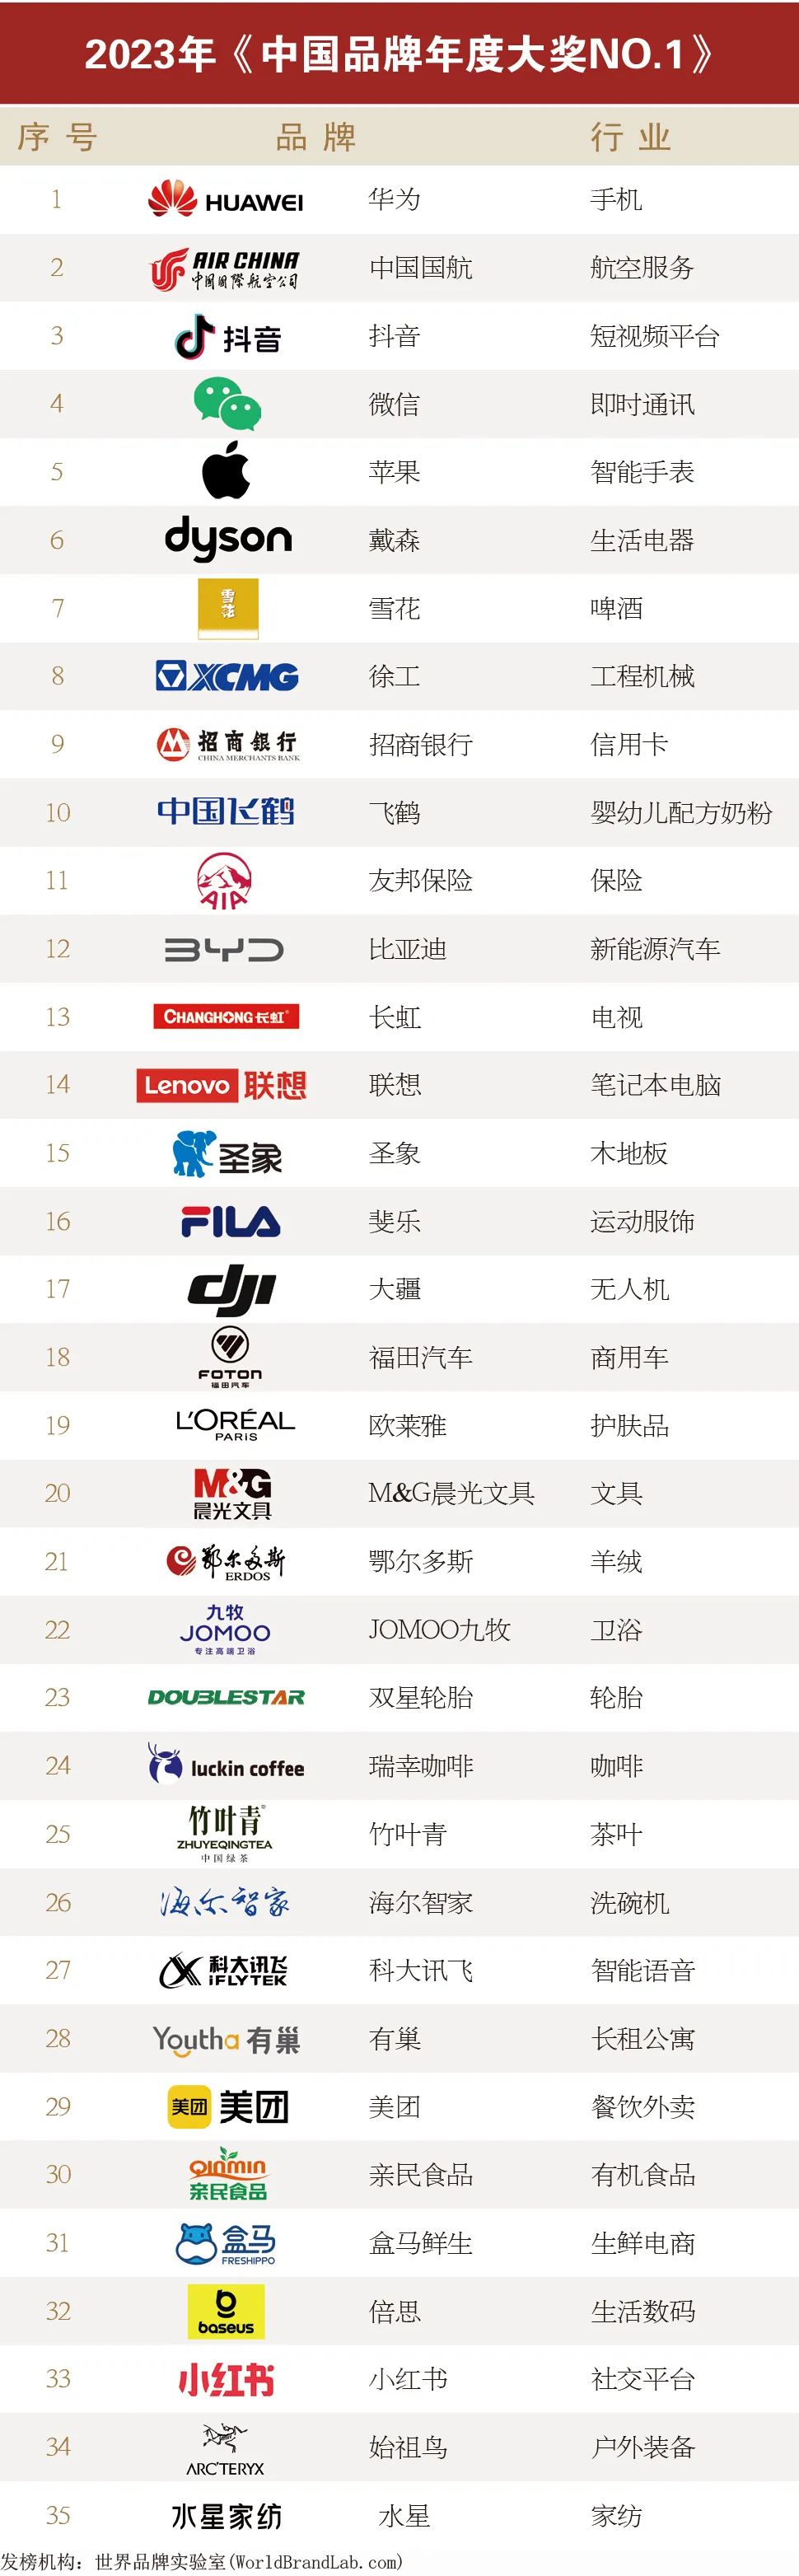 最新行业NO.1榜单发布，35个领军品牌入选